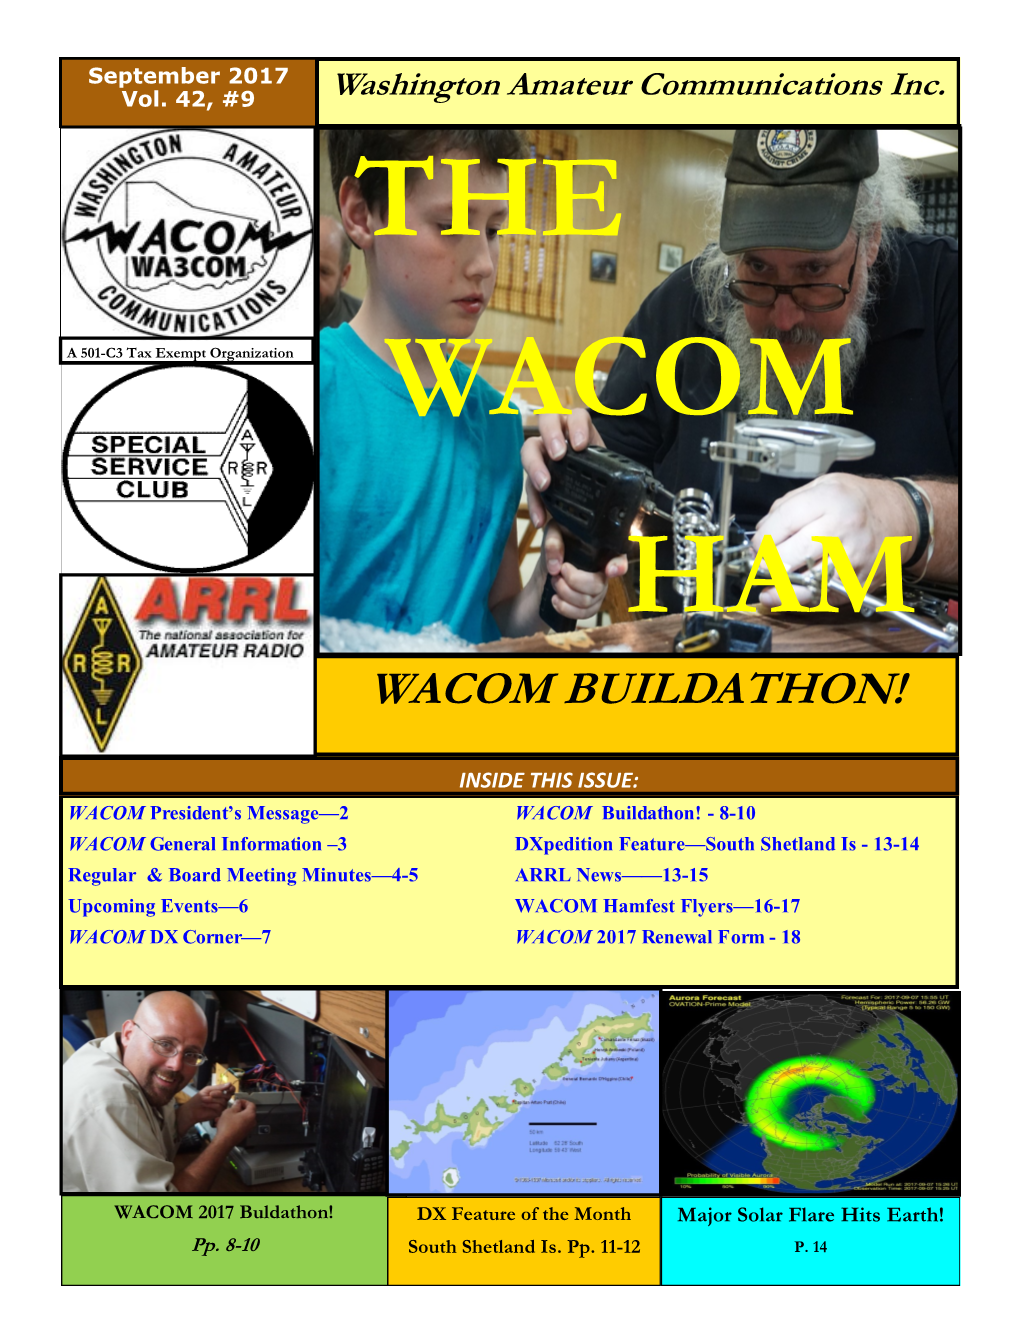 Wacom Buildathon!